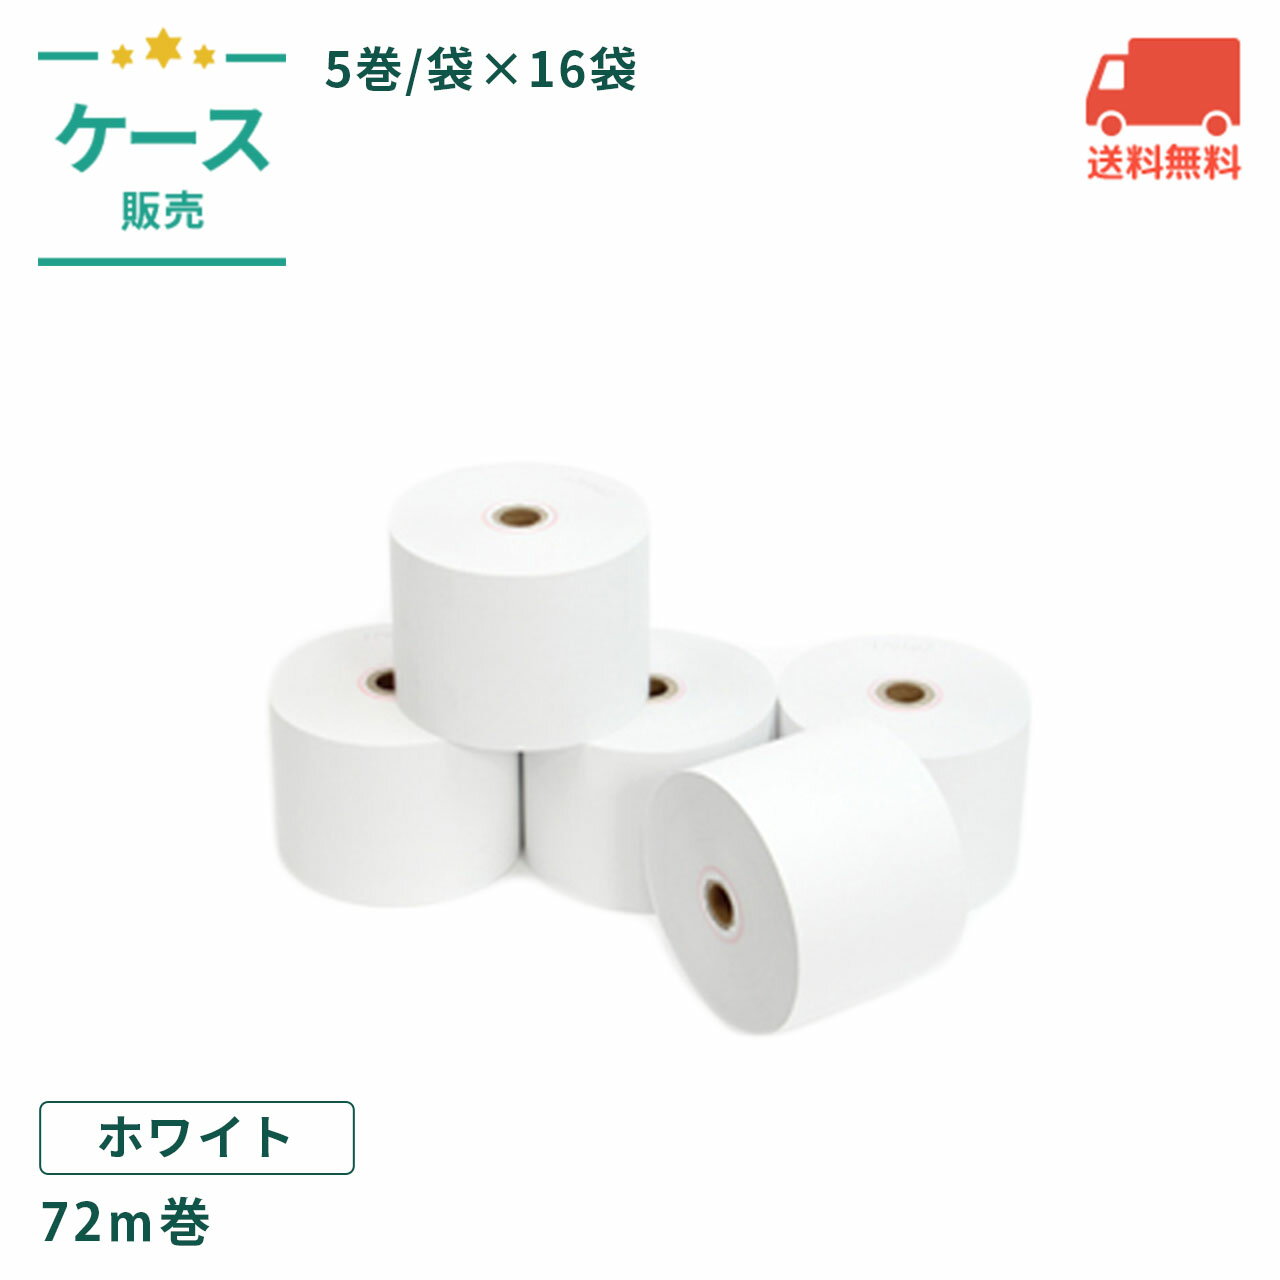 レジロール 58×80×12 (58G) 72m巻 感熱紙 5巻/袋×16袋/ケース 【ケース売】  ...